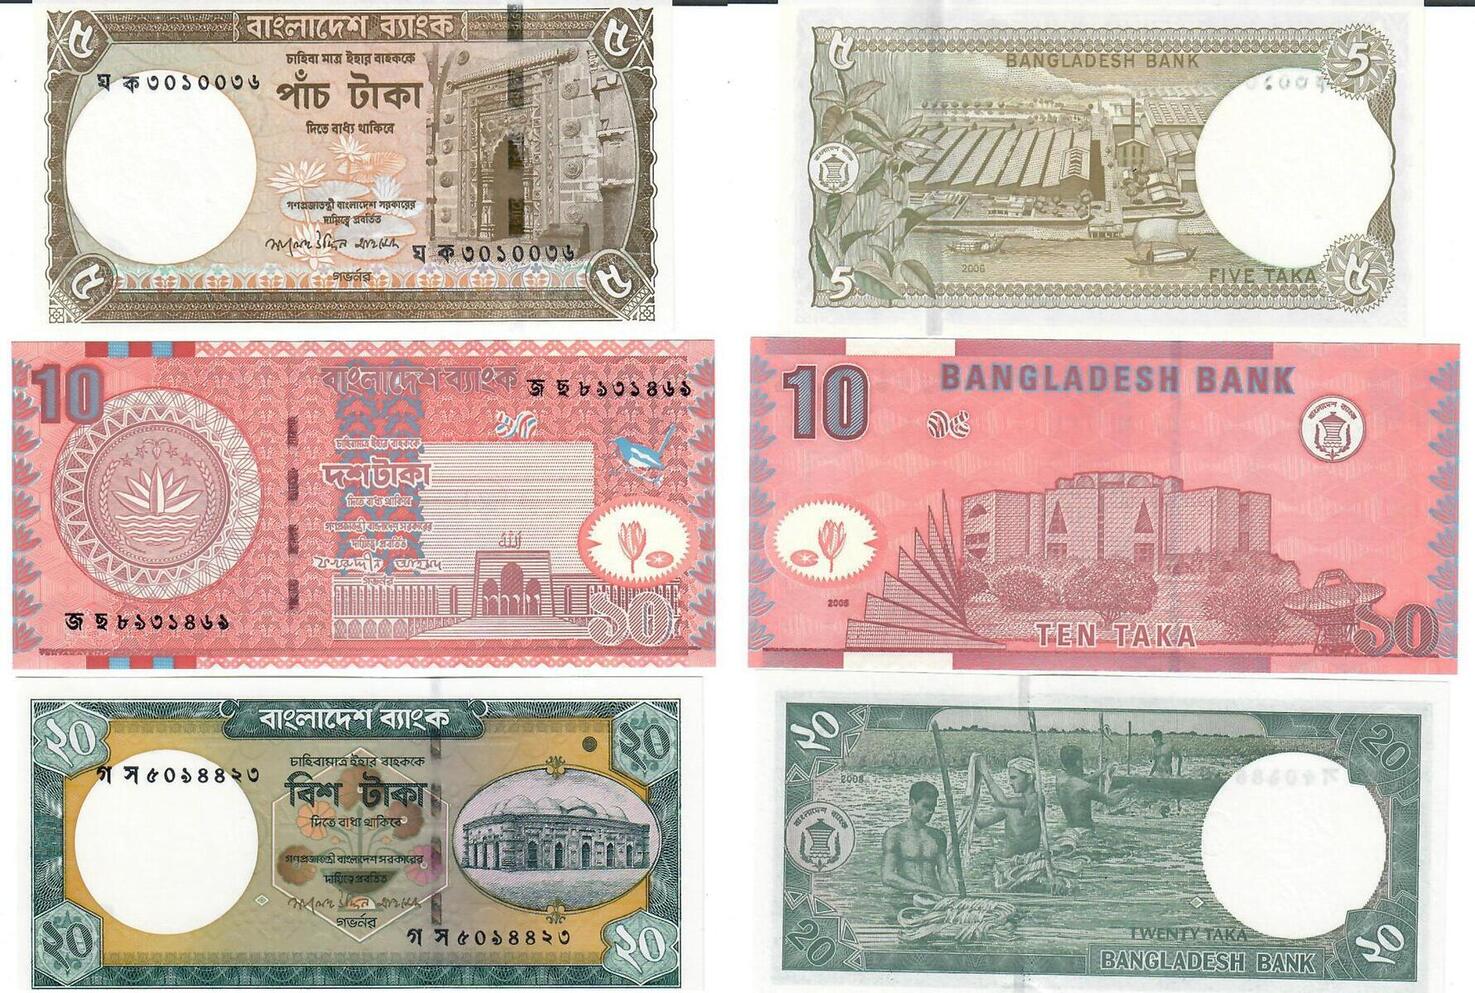 Така 20. Five taka. Bangladesh Banknotes 20 taka. Bangladesh Coin 5taka Front andback. Така 10